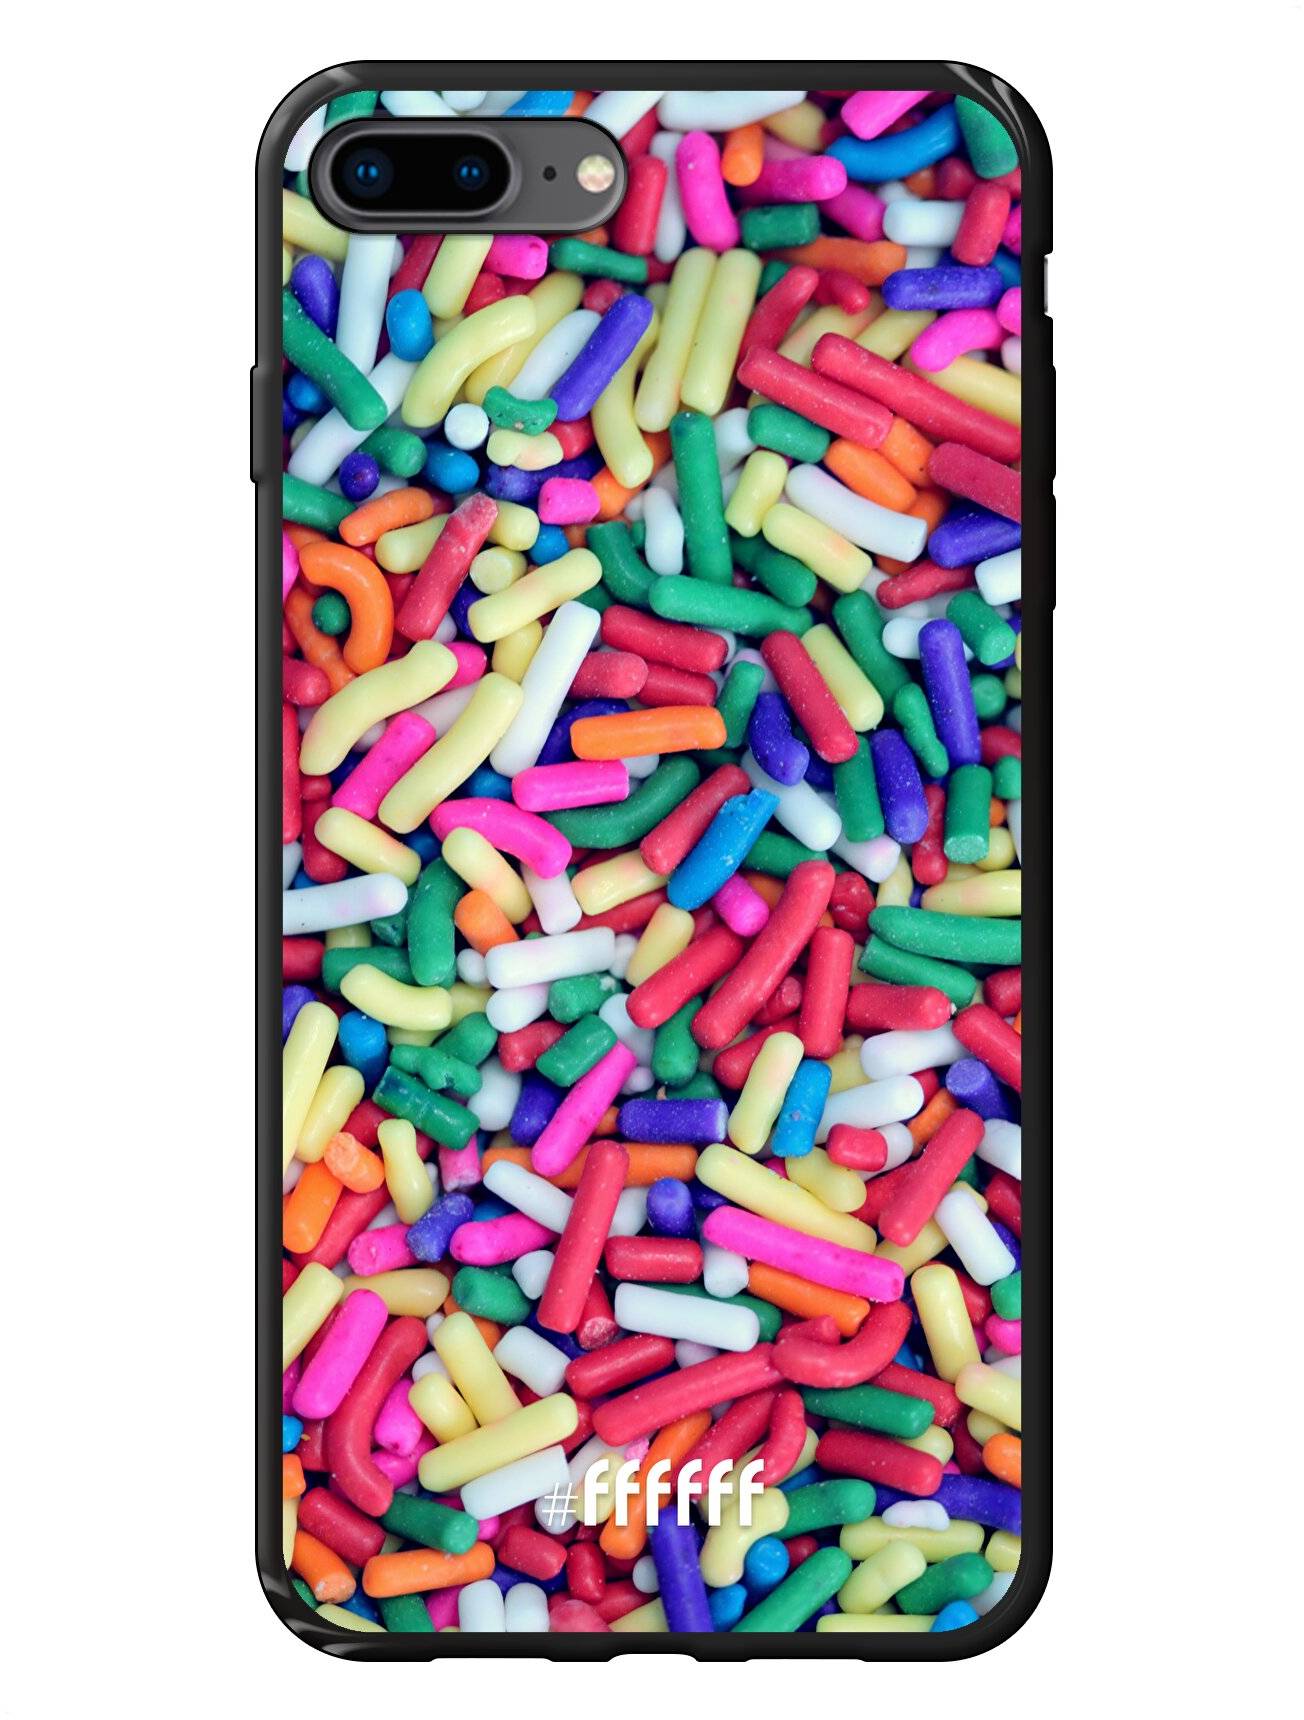 Sprinkles iPhone 7 Plus